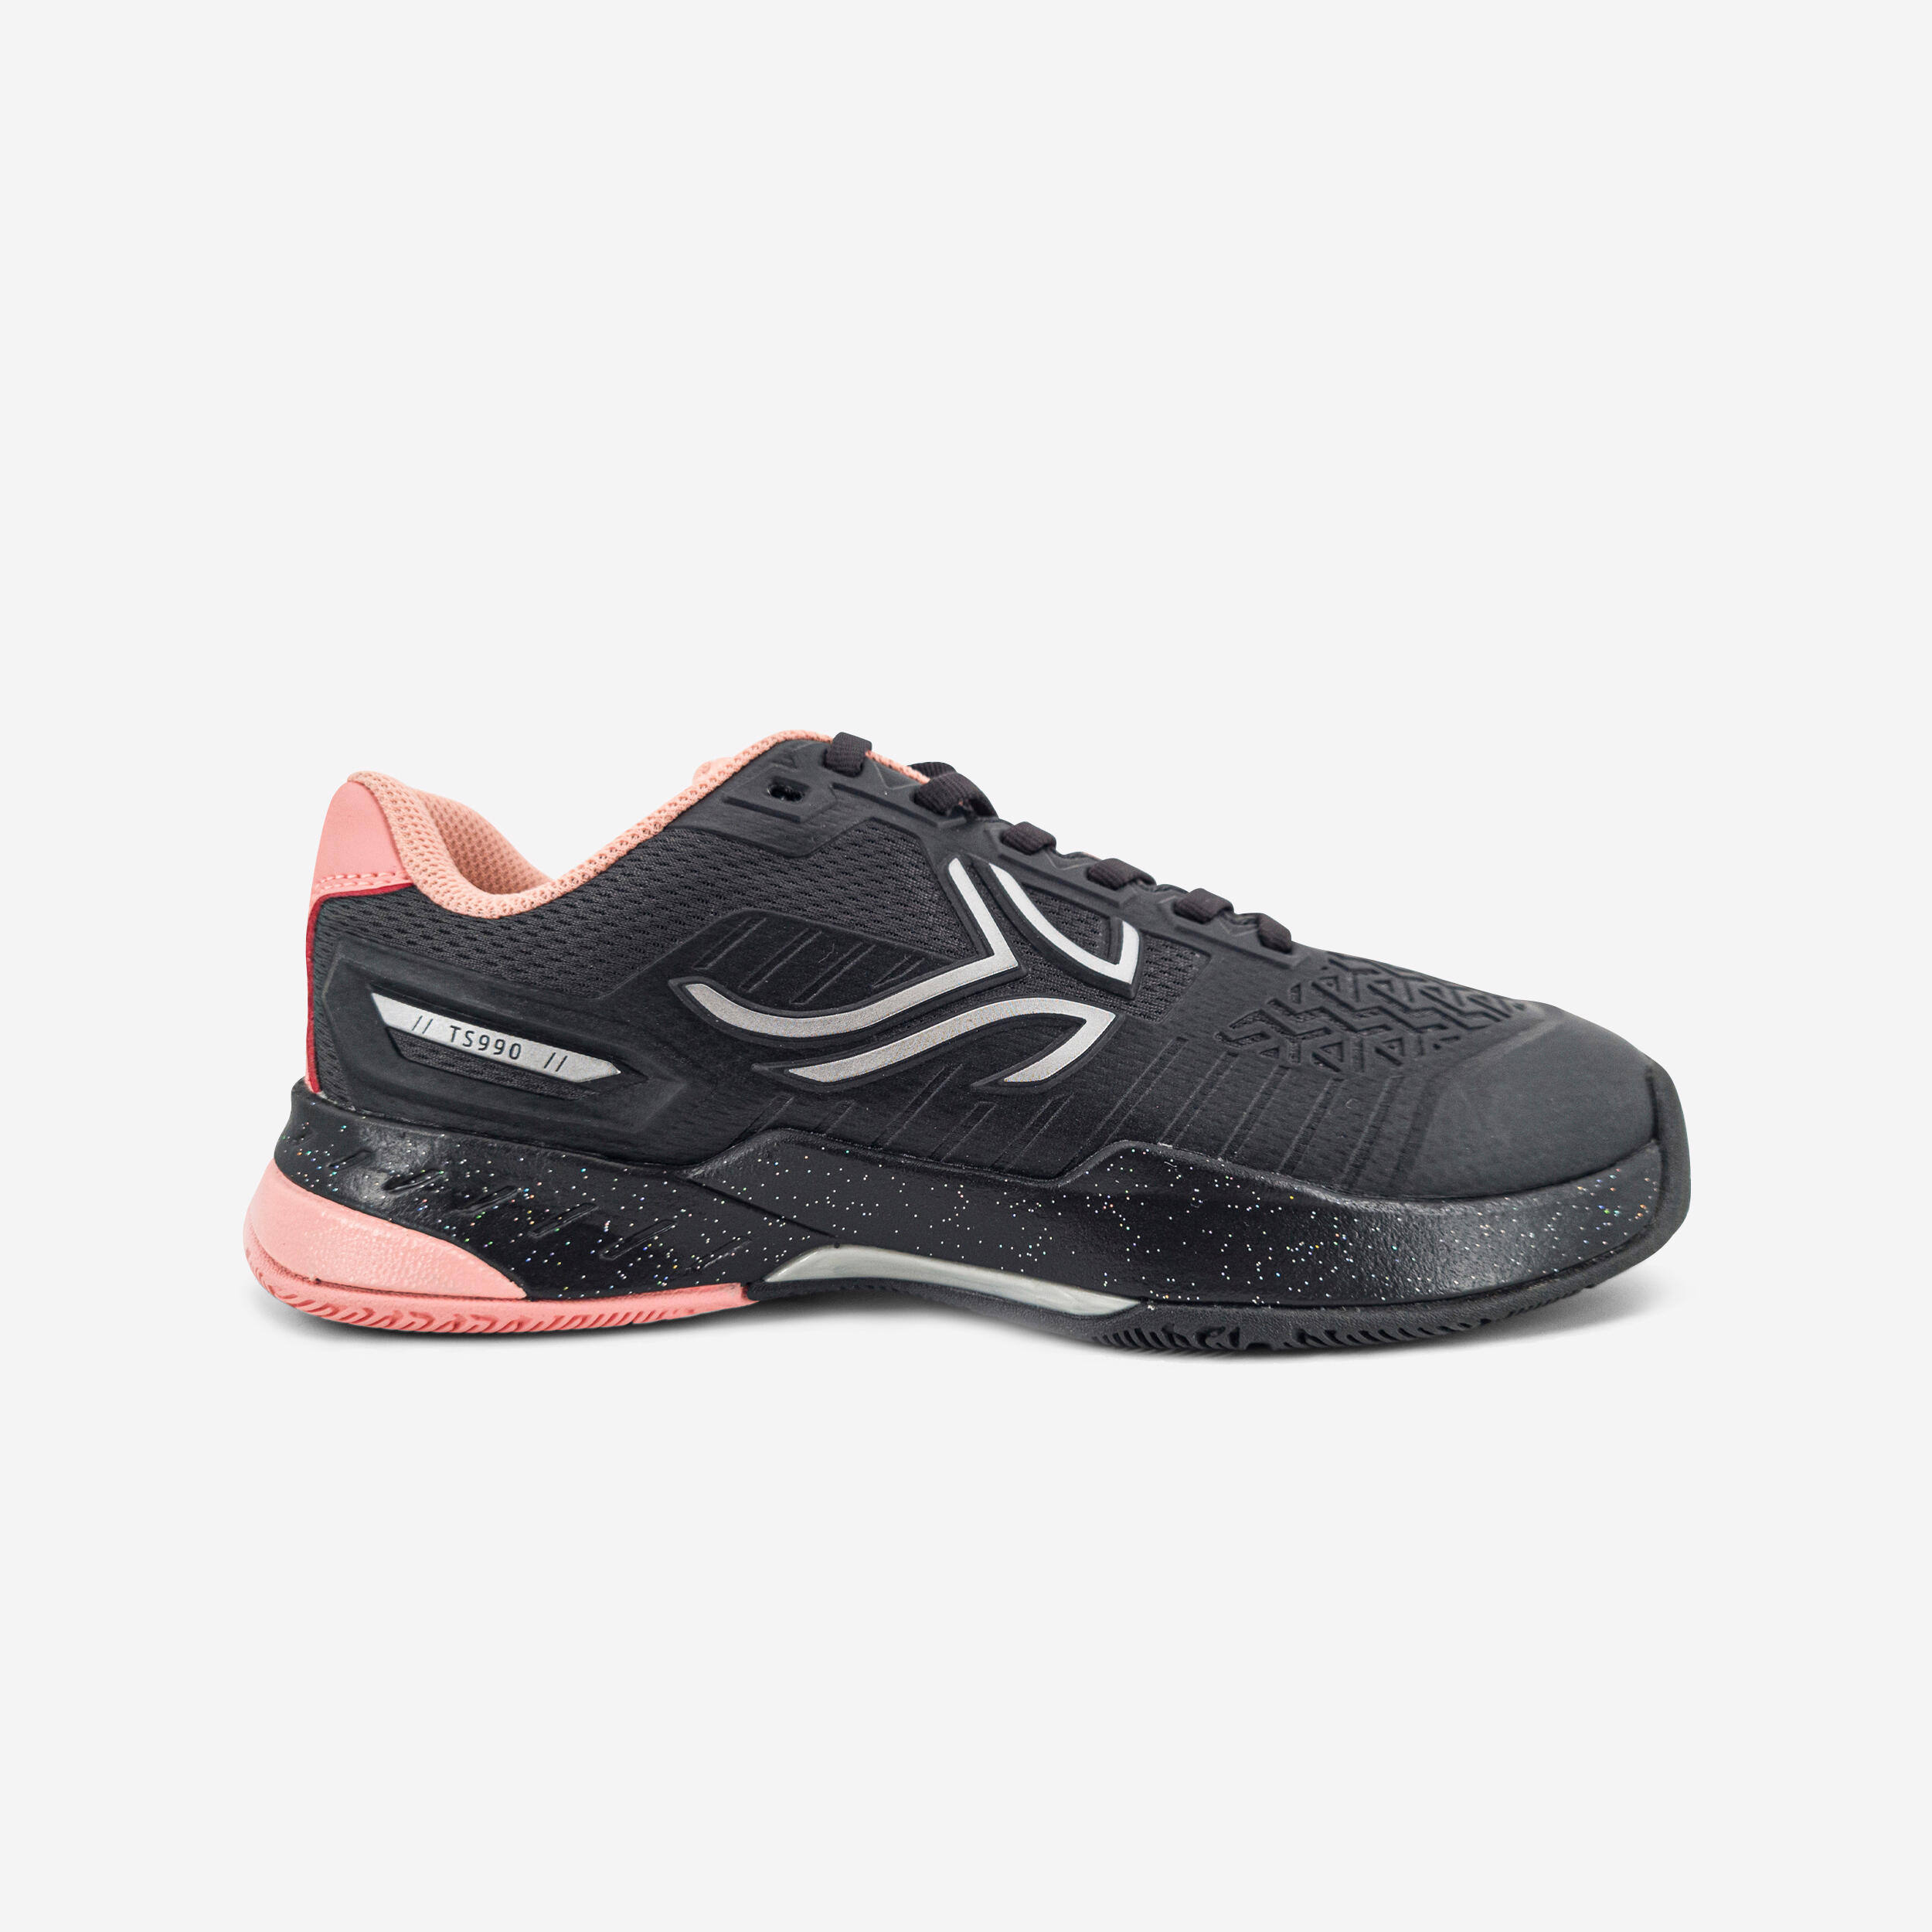 chaussures de tennis enfant artengo ts990 jr noir paillette - artengo